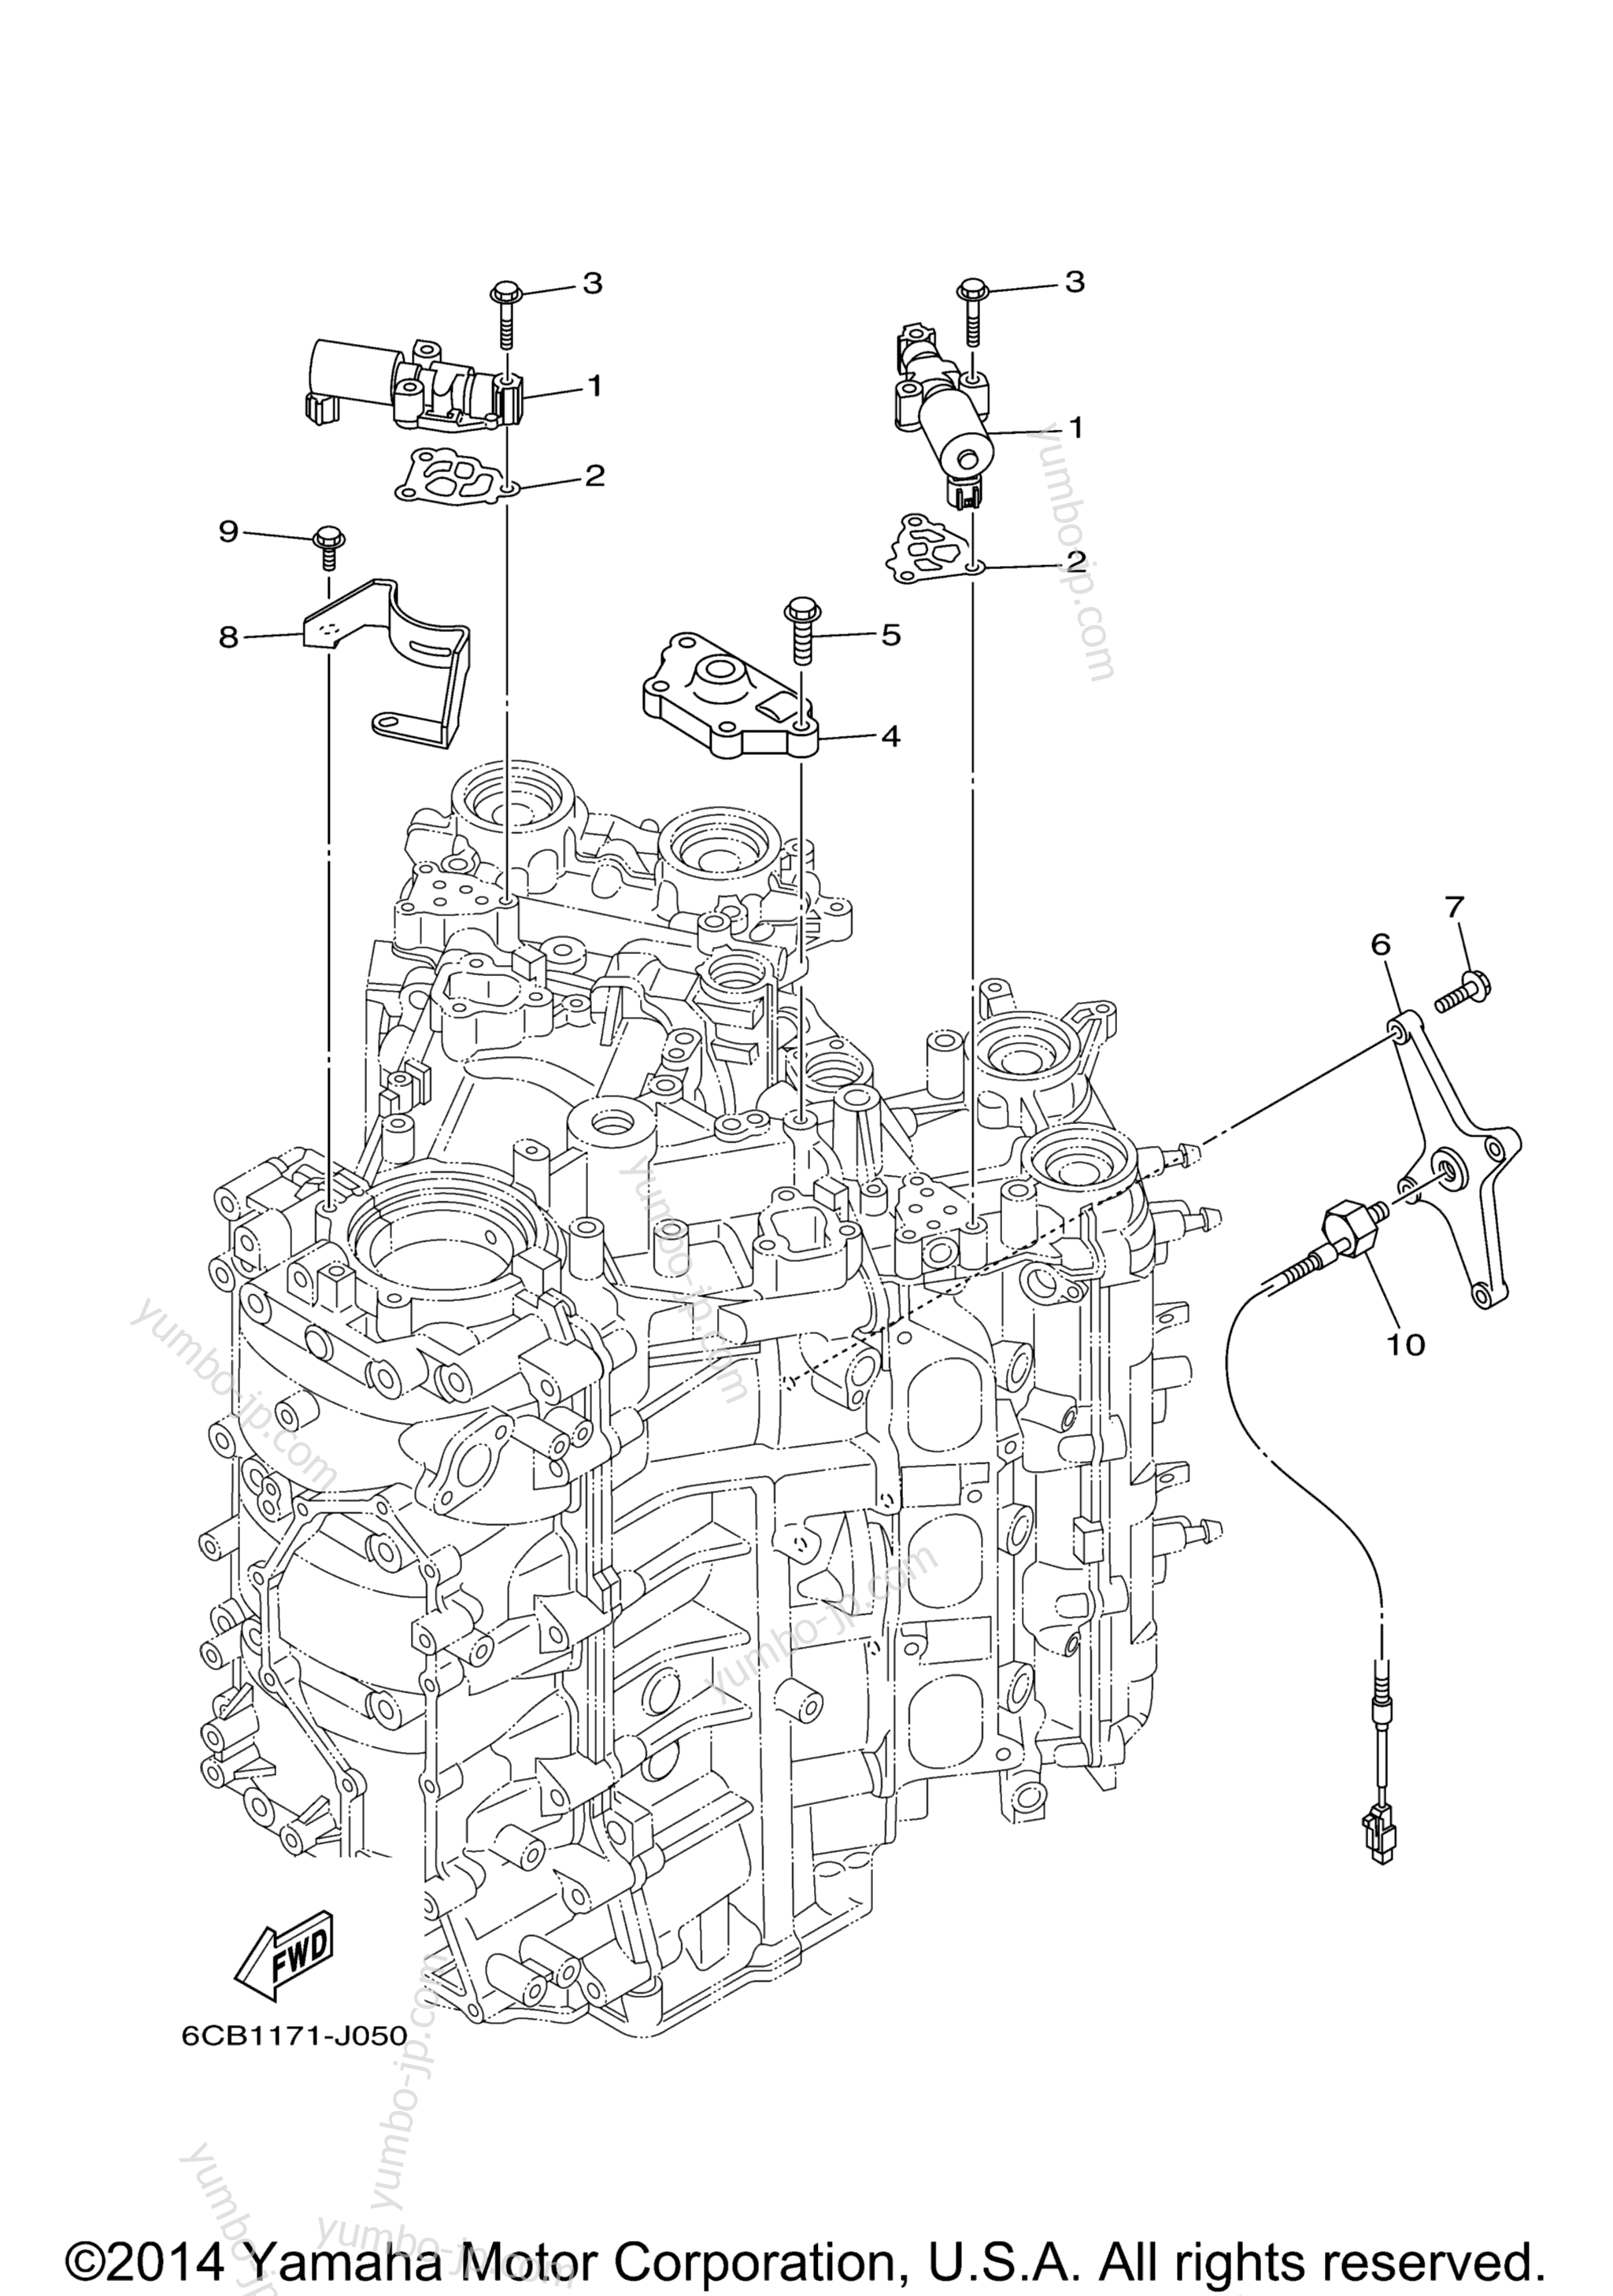 Cylinder Crankcase 3 для лодочных моторов YAMAHA VF225LA_04 (0411) 2006 г.